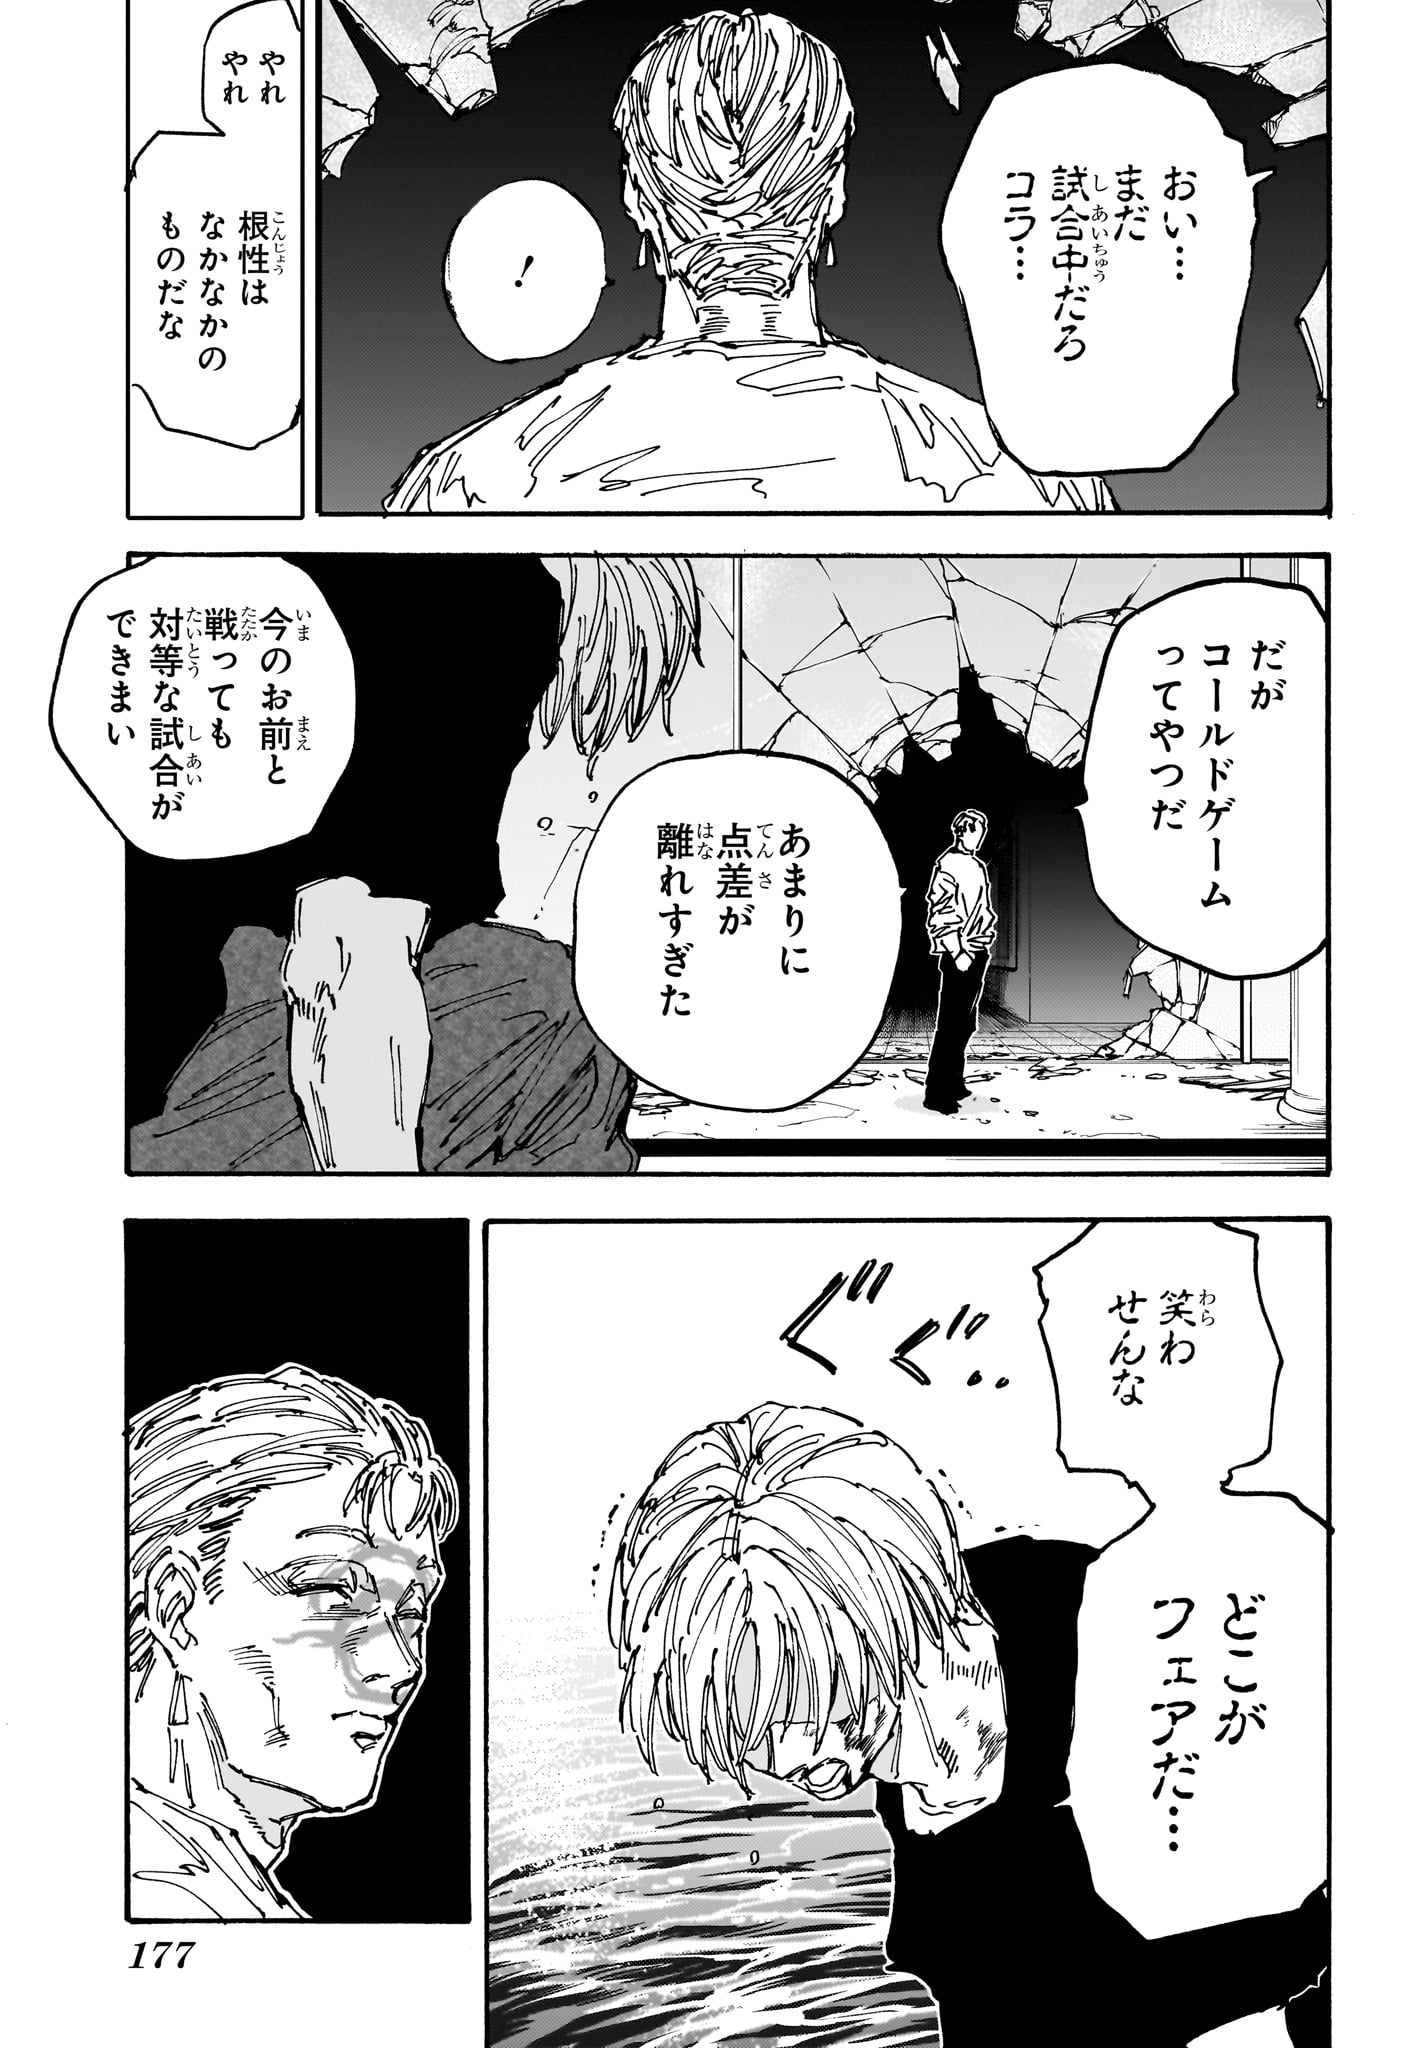 Sakamoto Days - Chapter 157 - Page 13